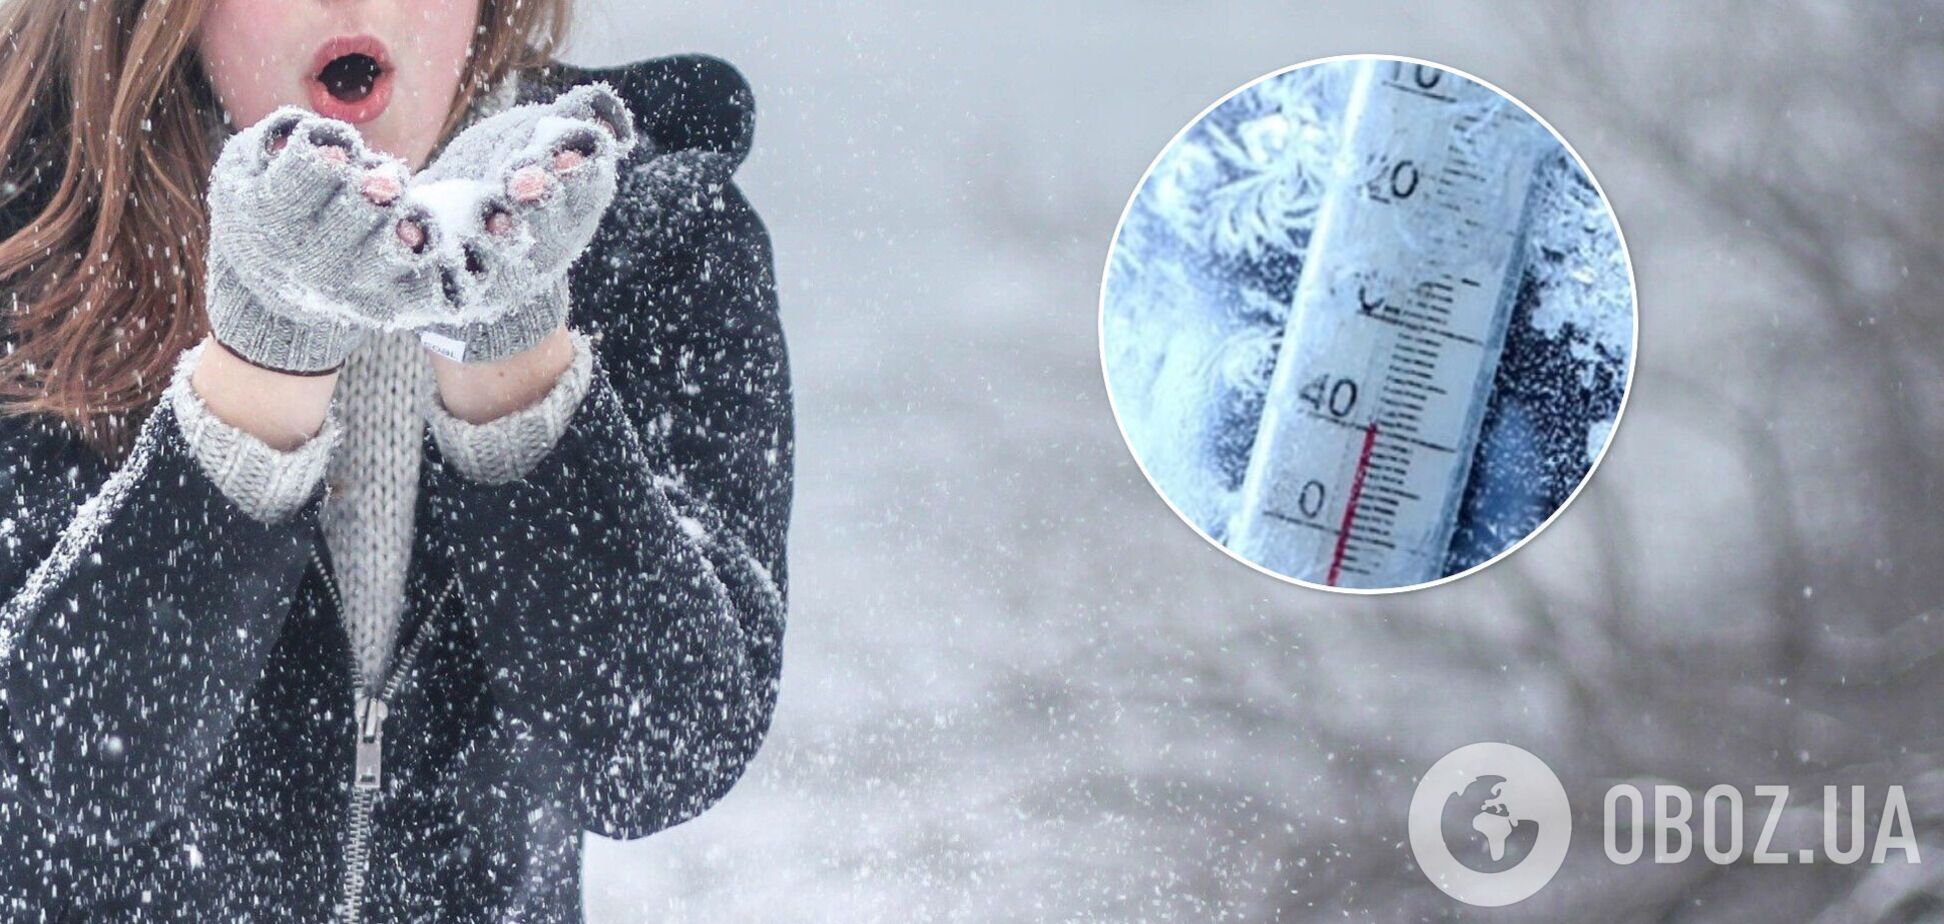 В Украине ударят морозы до минус 13, есть вероятность снега: прогноз погоды на выходные